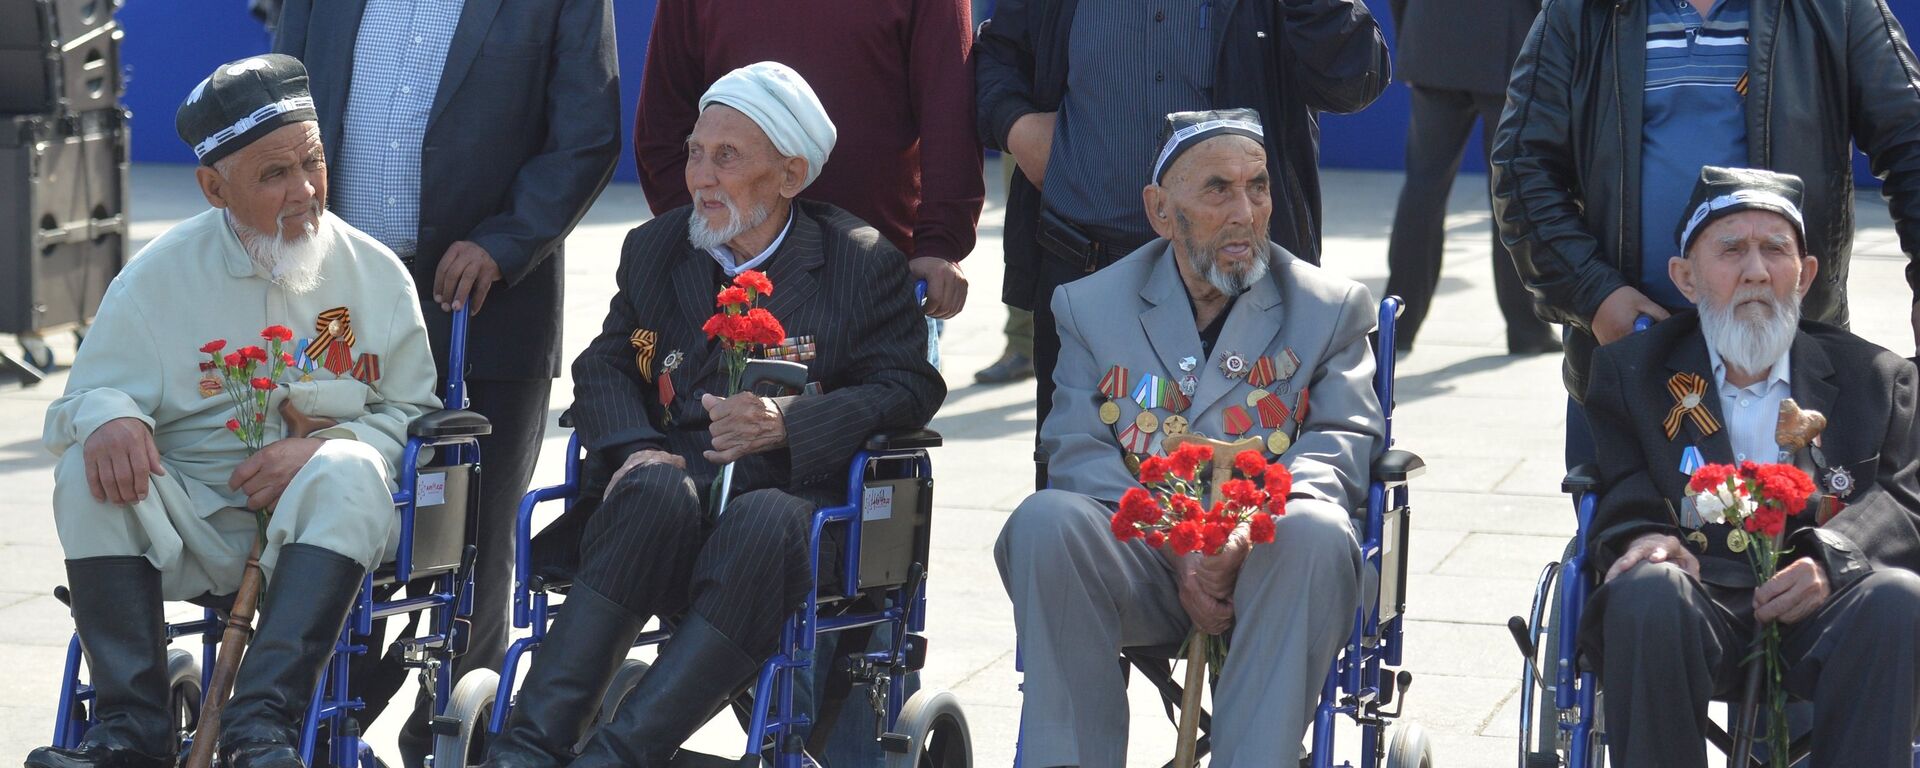 Инвалиды-ветераны Великой Отечественной войны - Sputnik Узбекистан, 1920, 05.11.2015